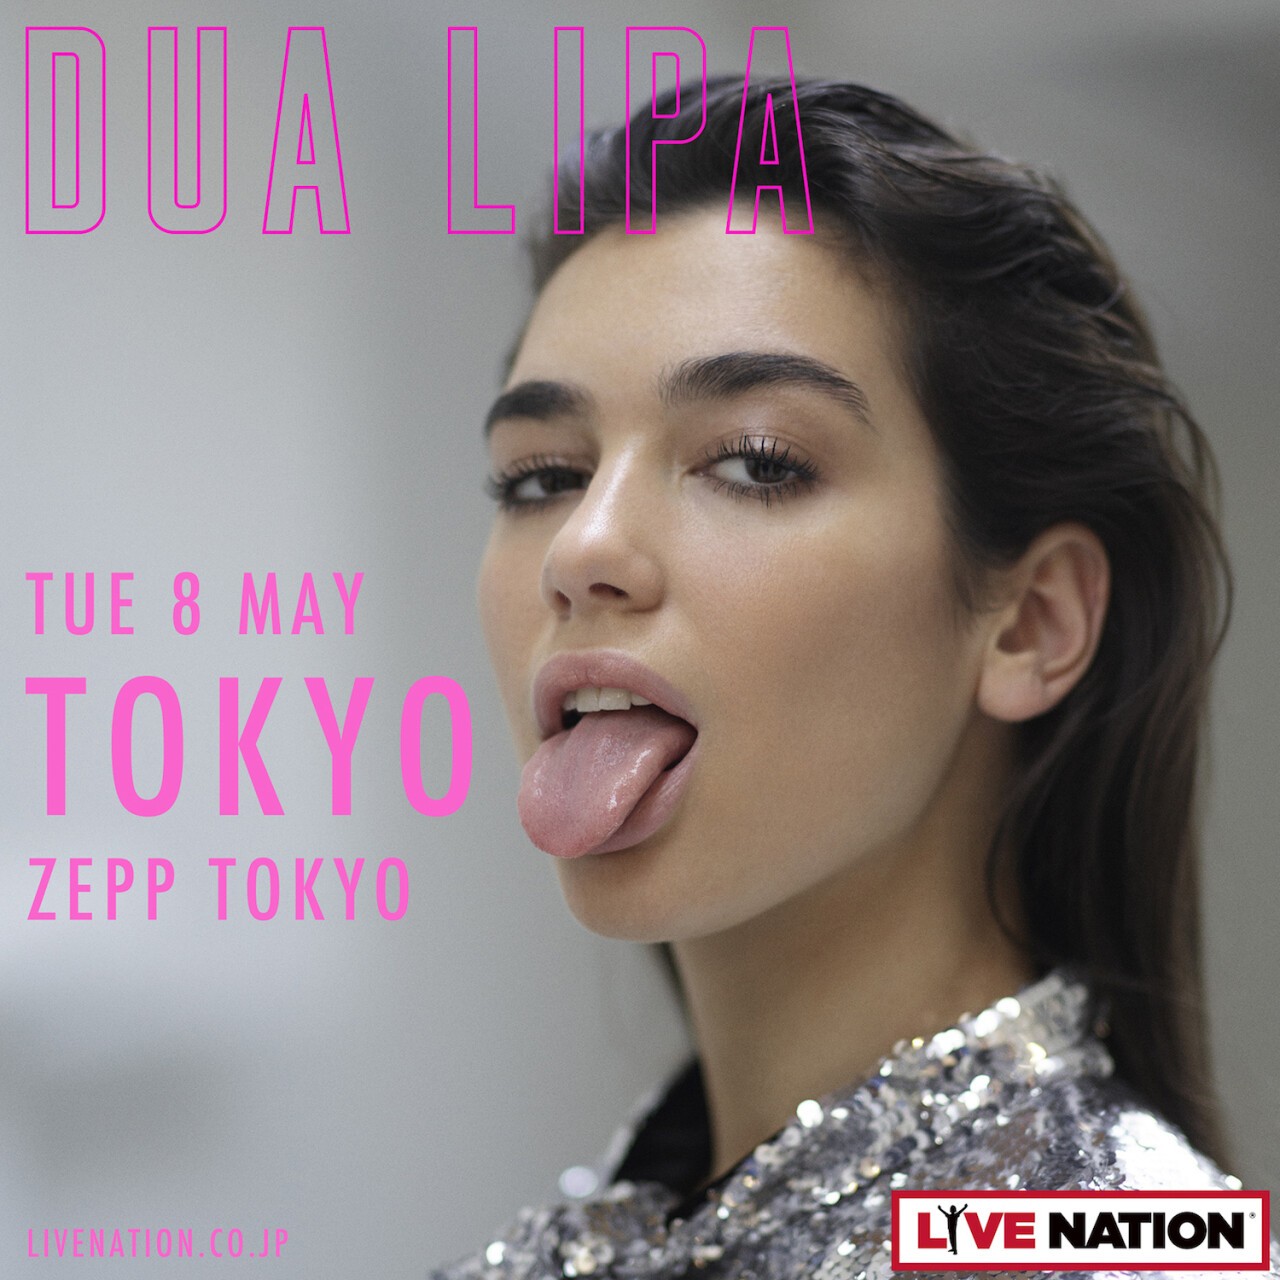 Iflyer Dua Lipa Japan Tour 2018 Zepp Tokyo 東京都